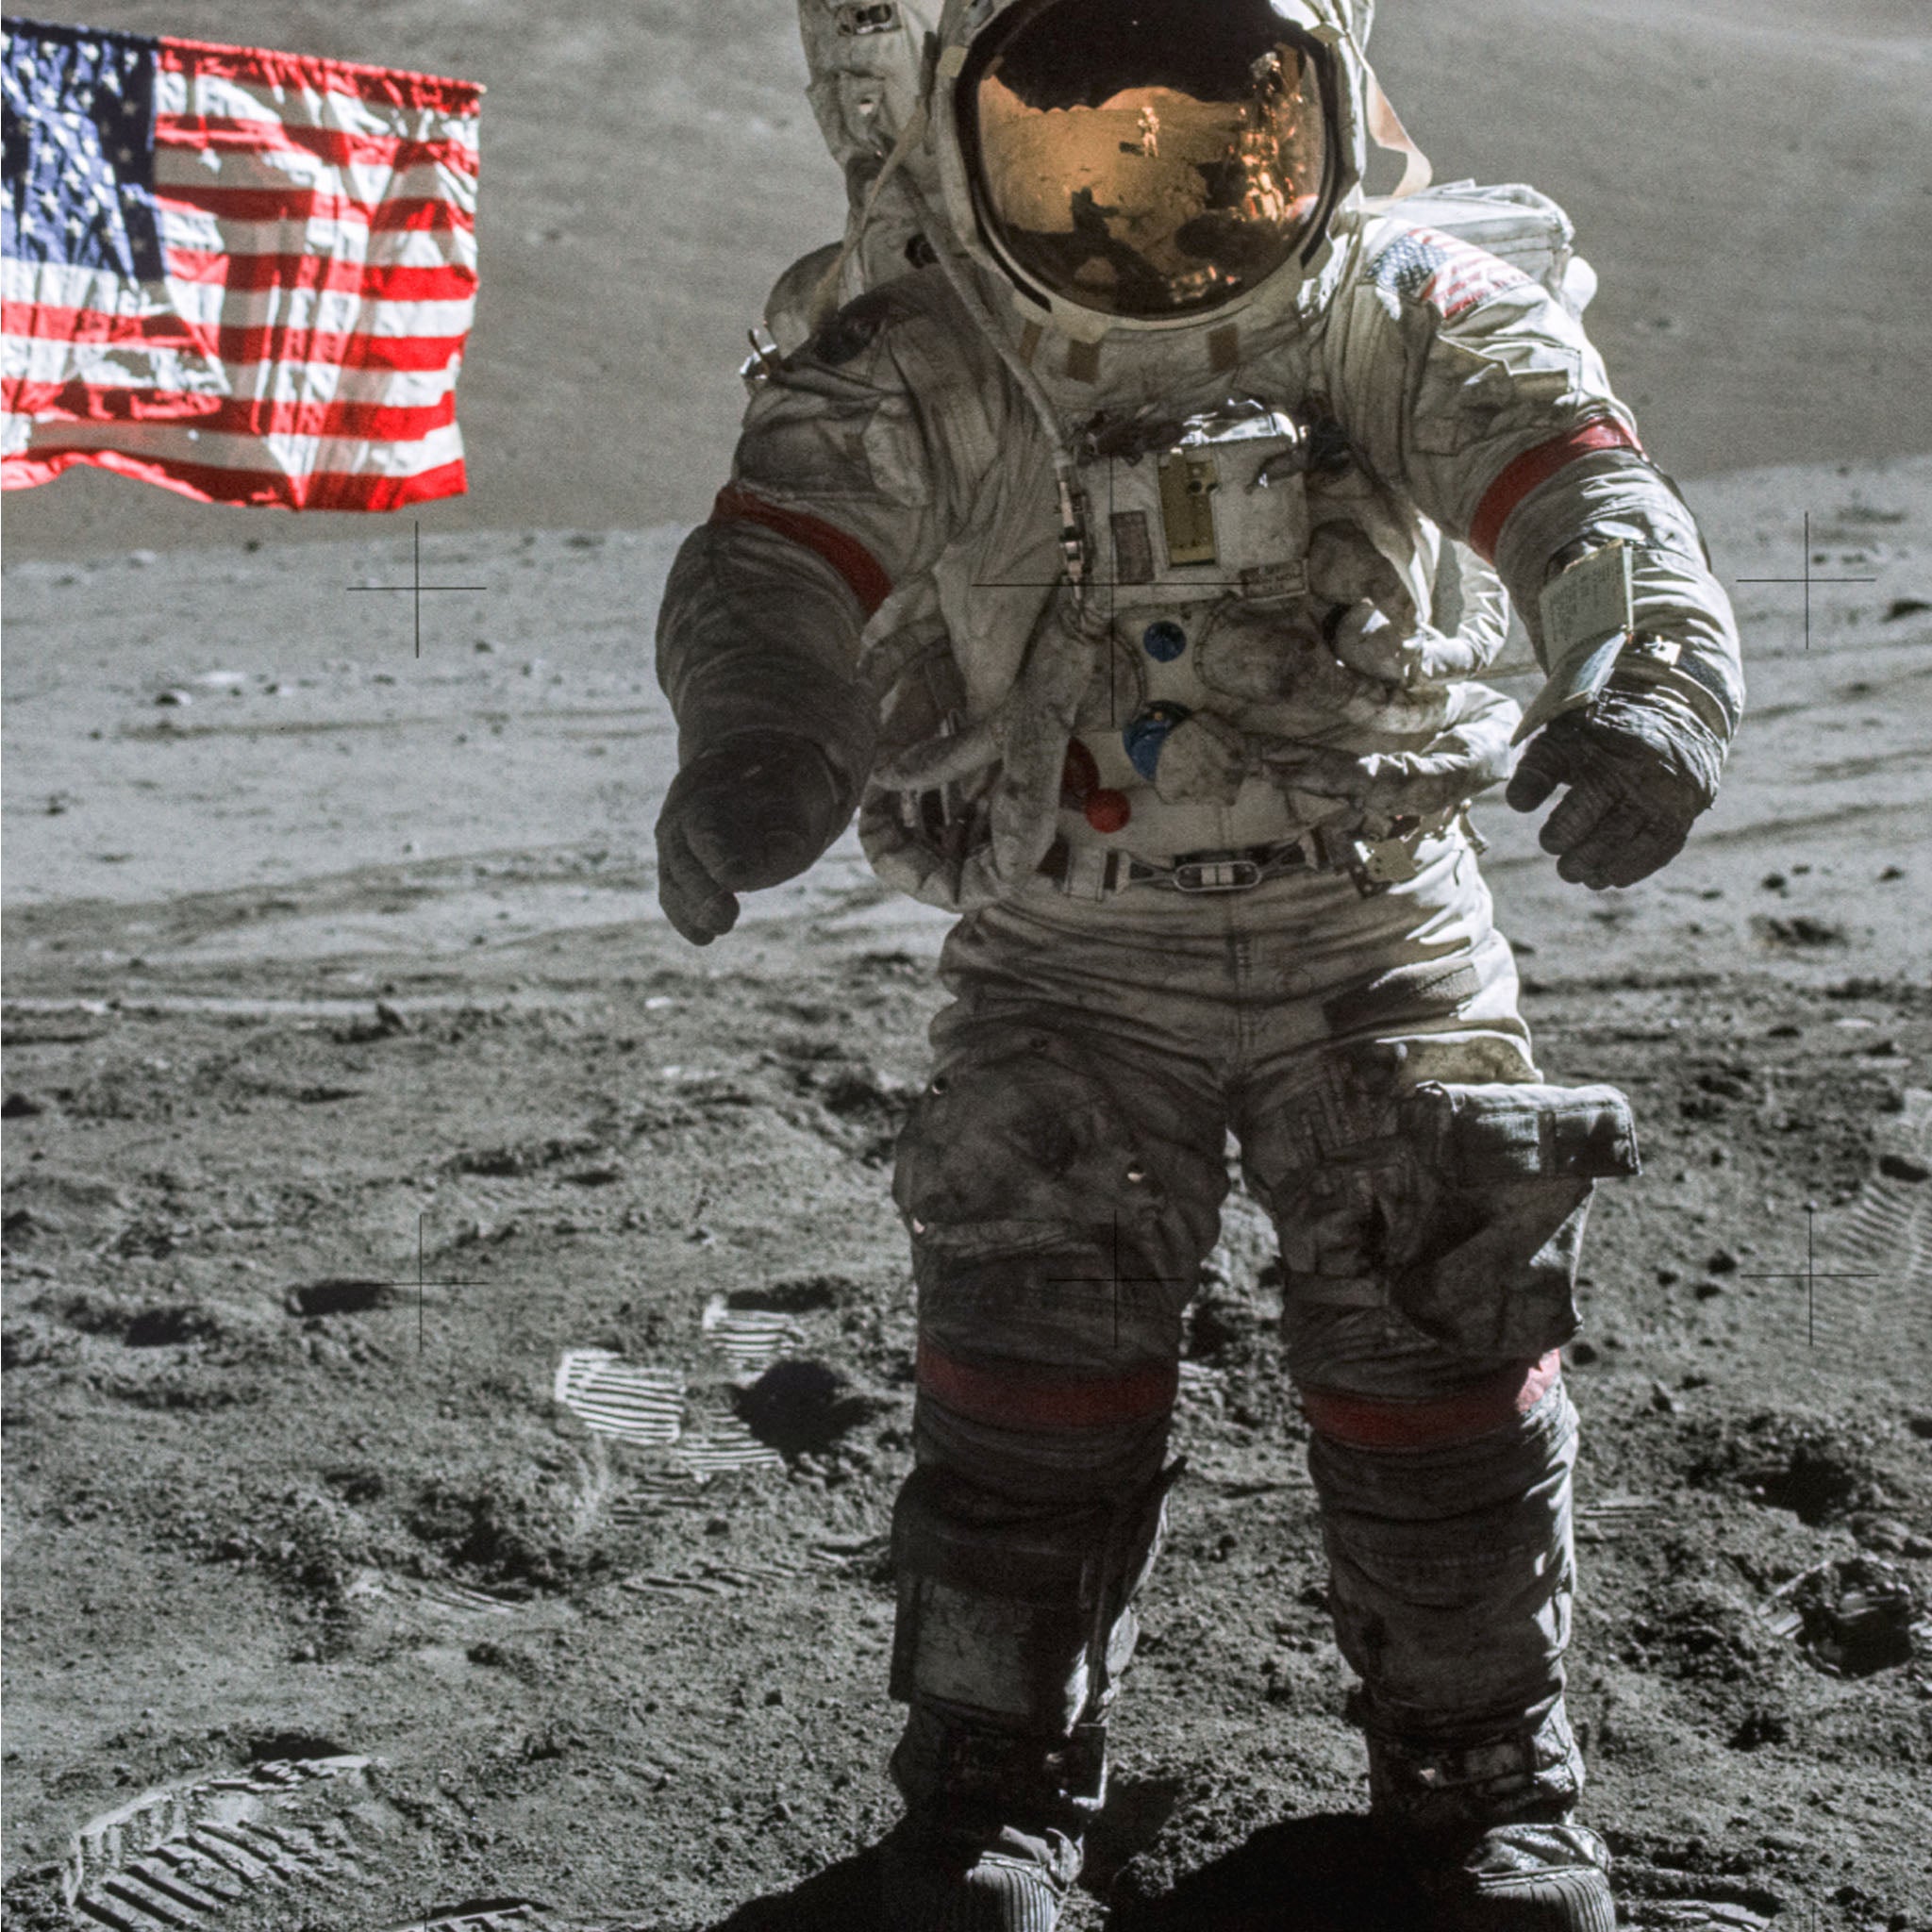 Człowiek na Księżycu - Apollo 17 